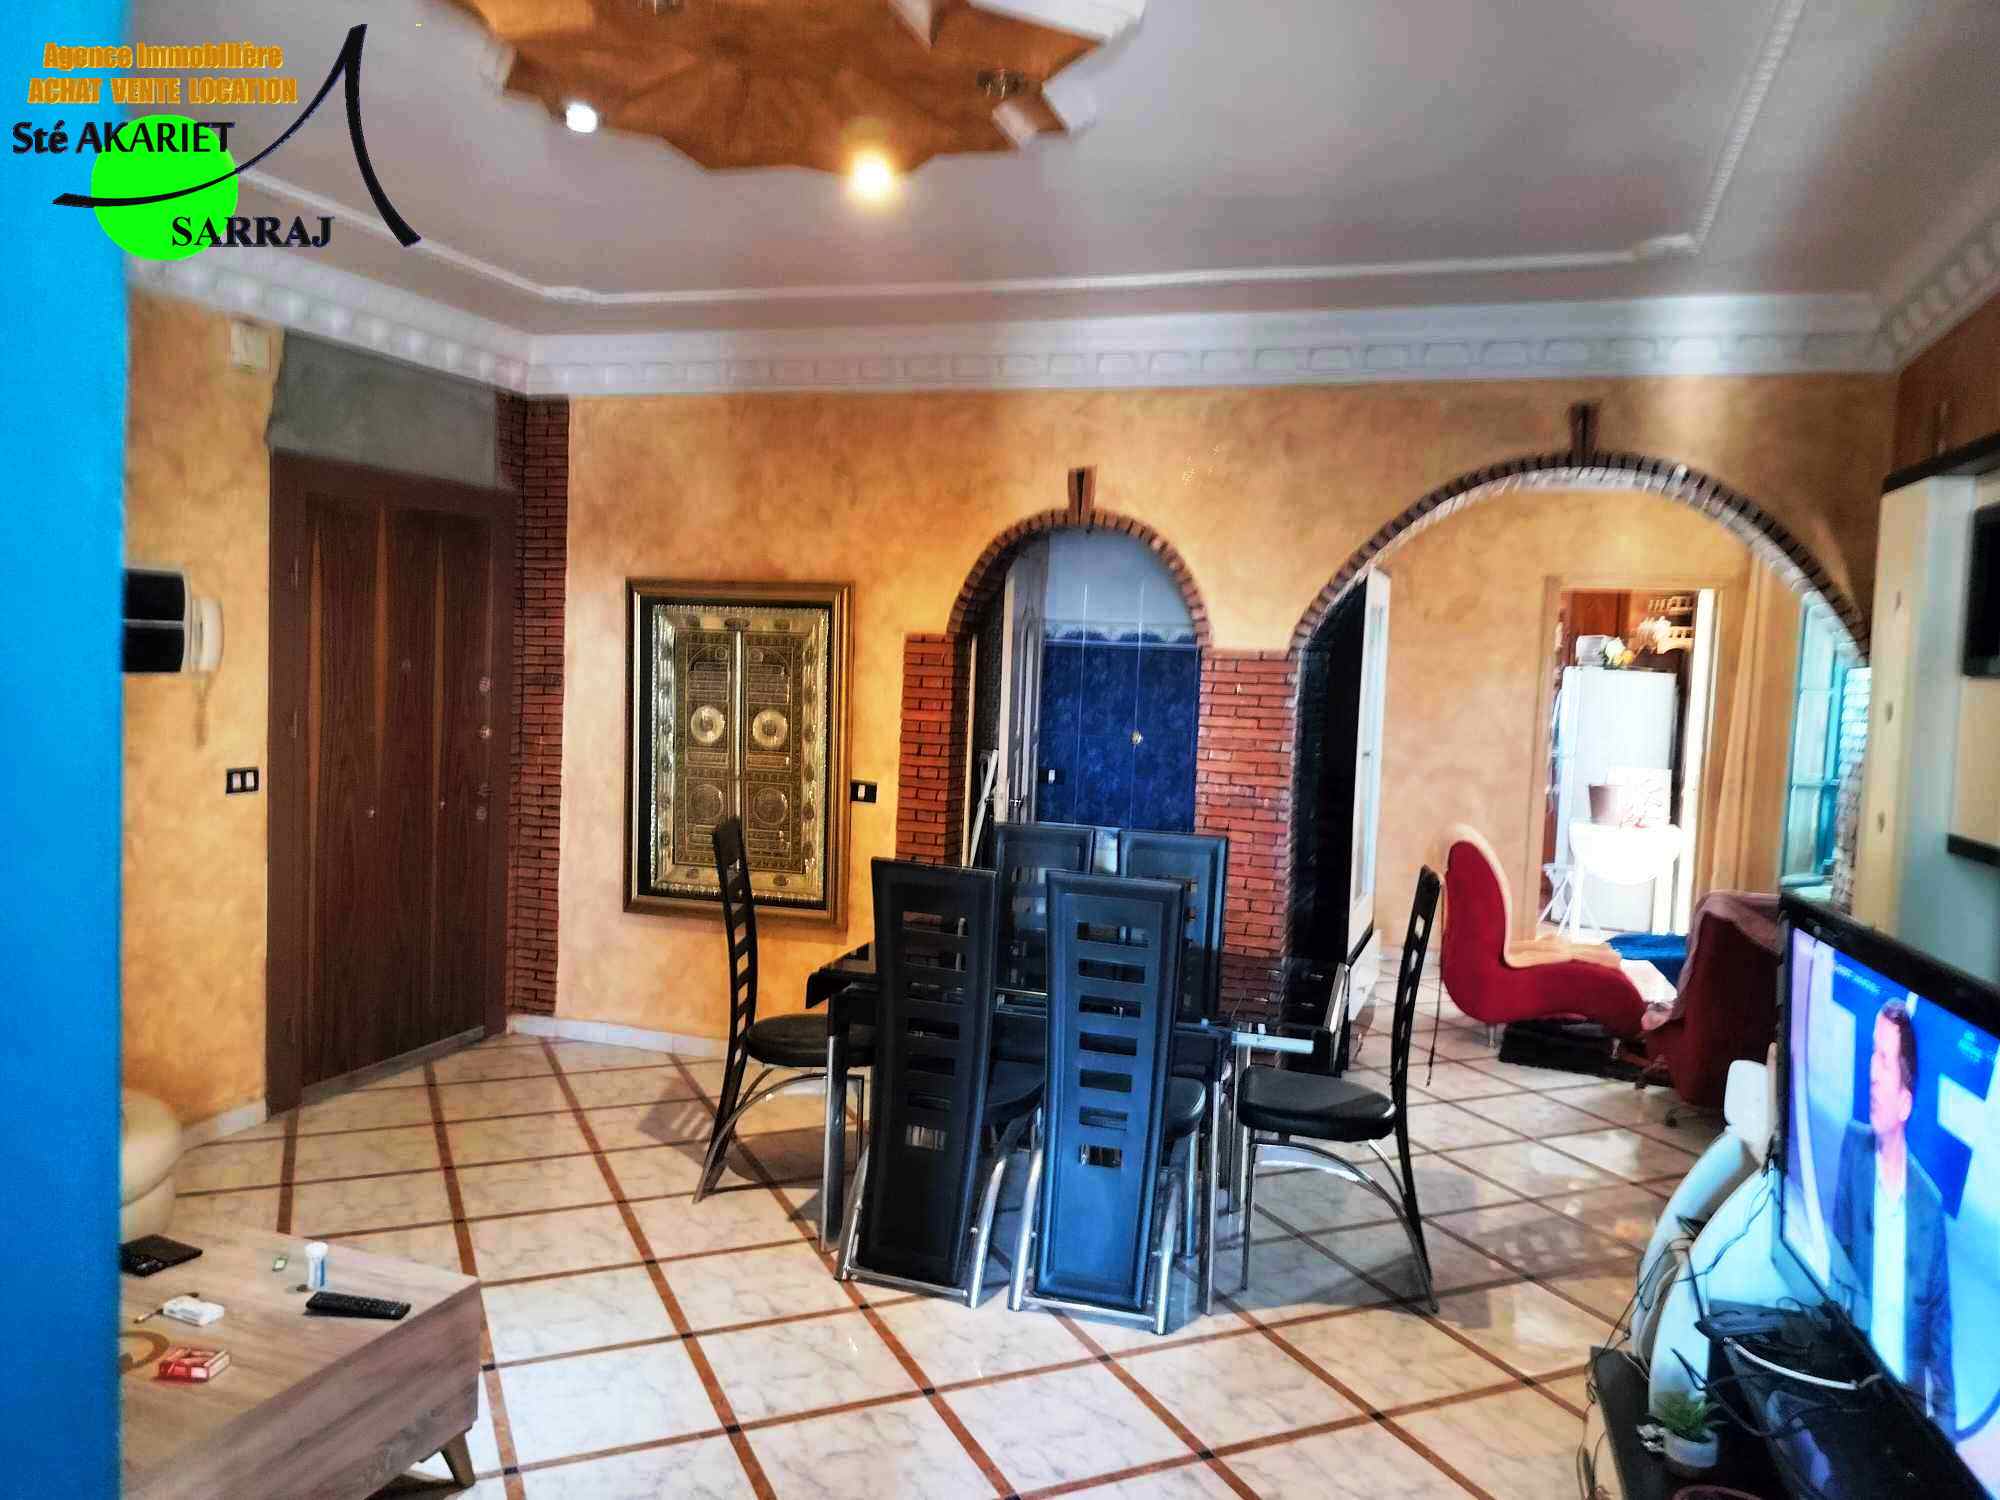 Sousse Jaouhara Sousse Khezama Vente Appart. 3 pices Joli appartement s2 proche de la route touristique